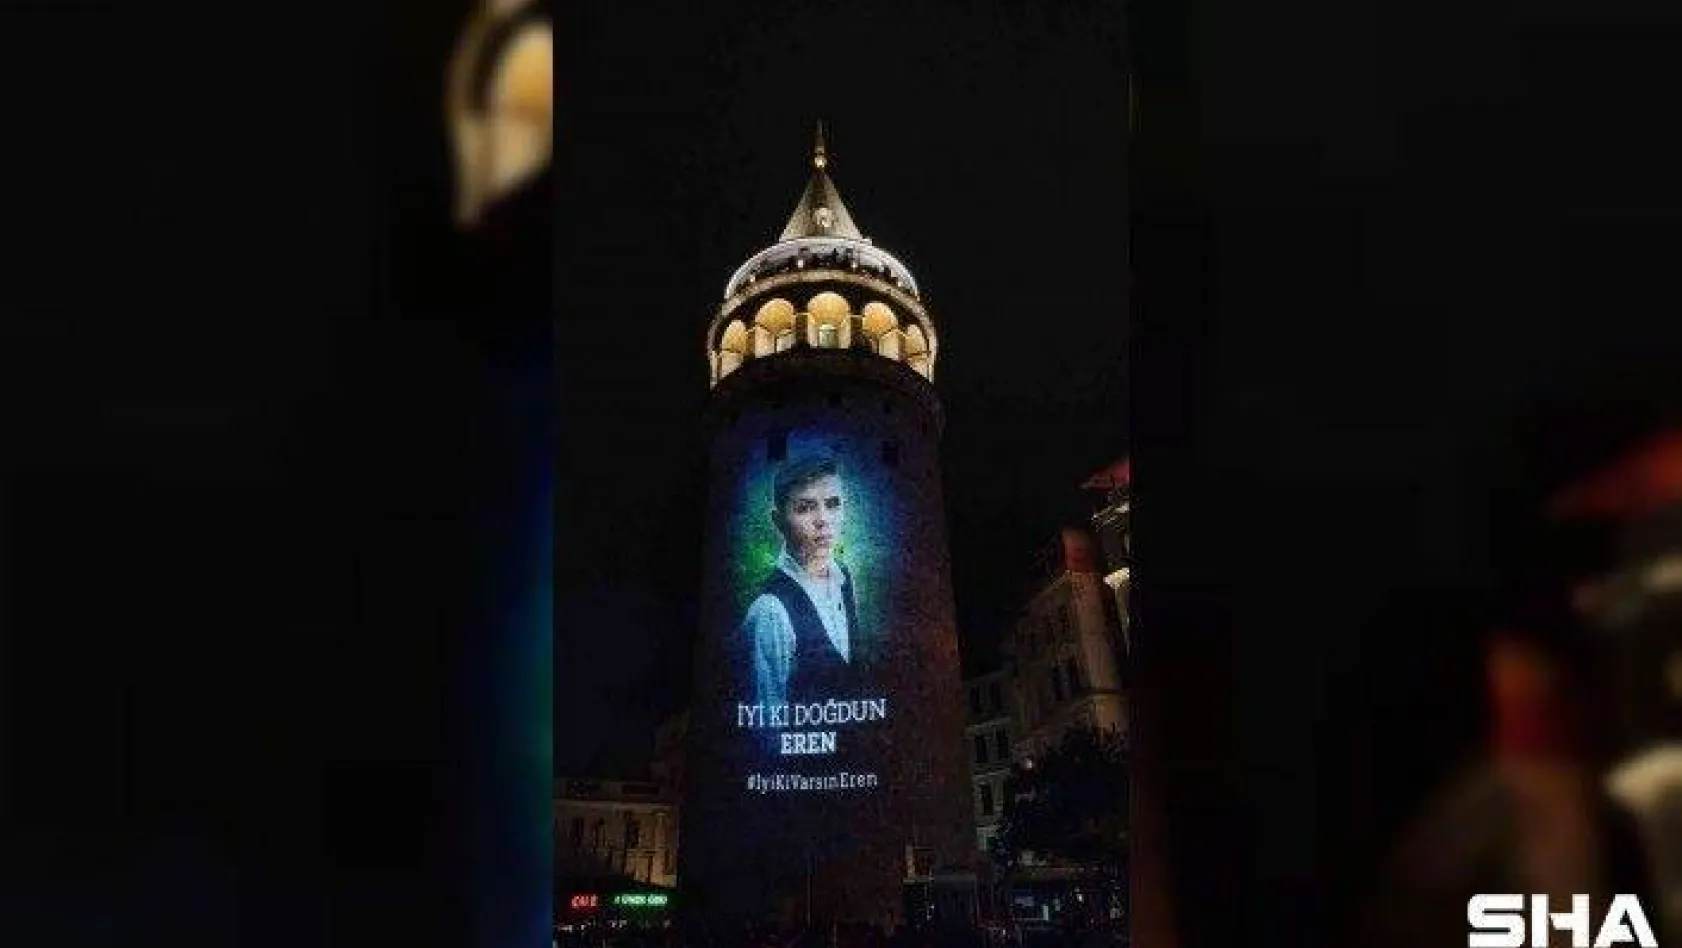 Şehit Eren Bülbül'ün doğum gününe özel hazırlanan video Galata Kulesi'ne yansıtıldı